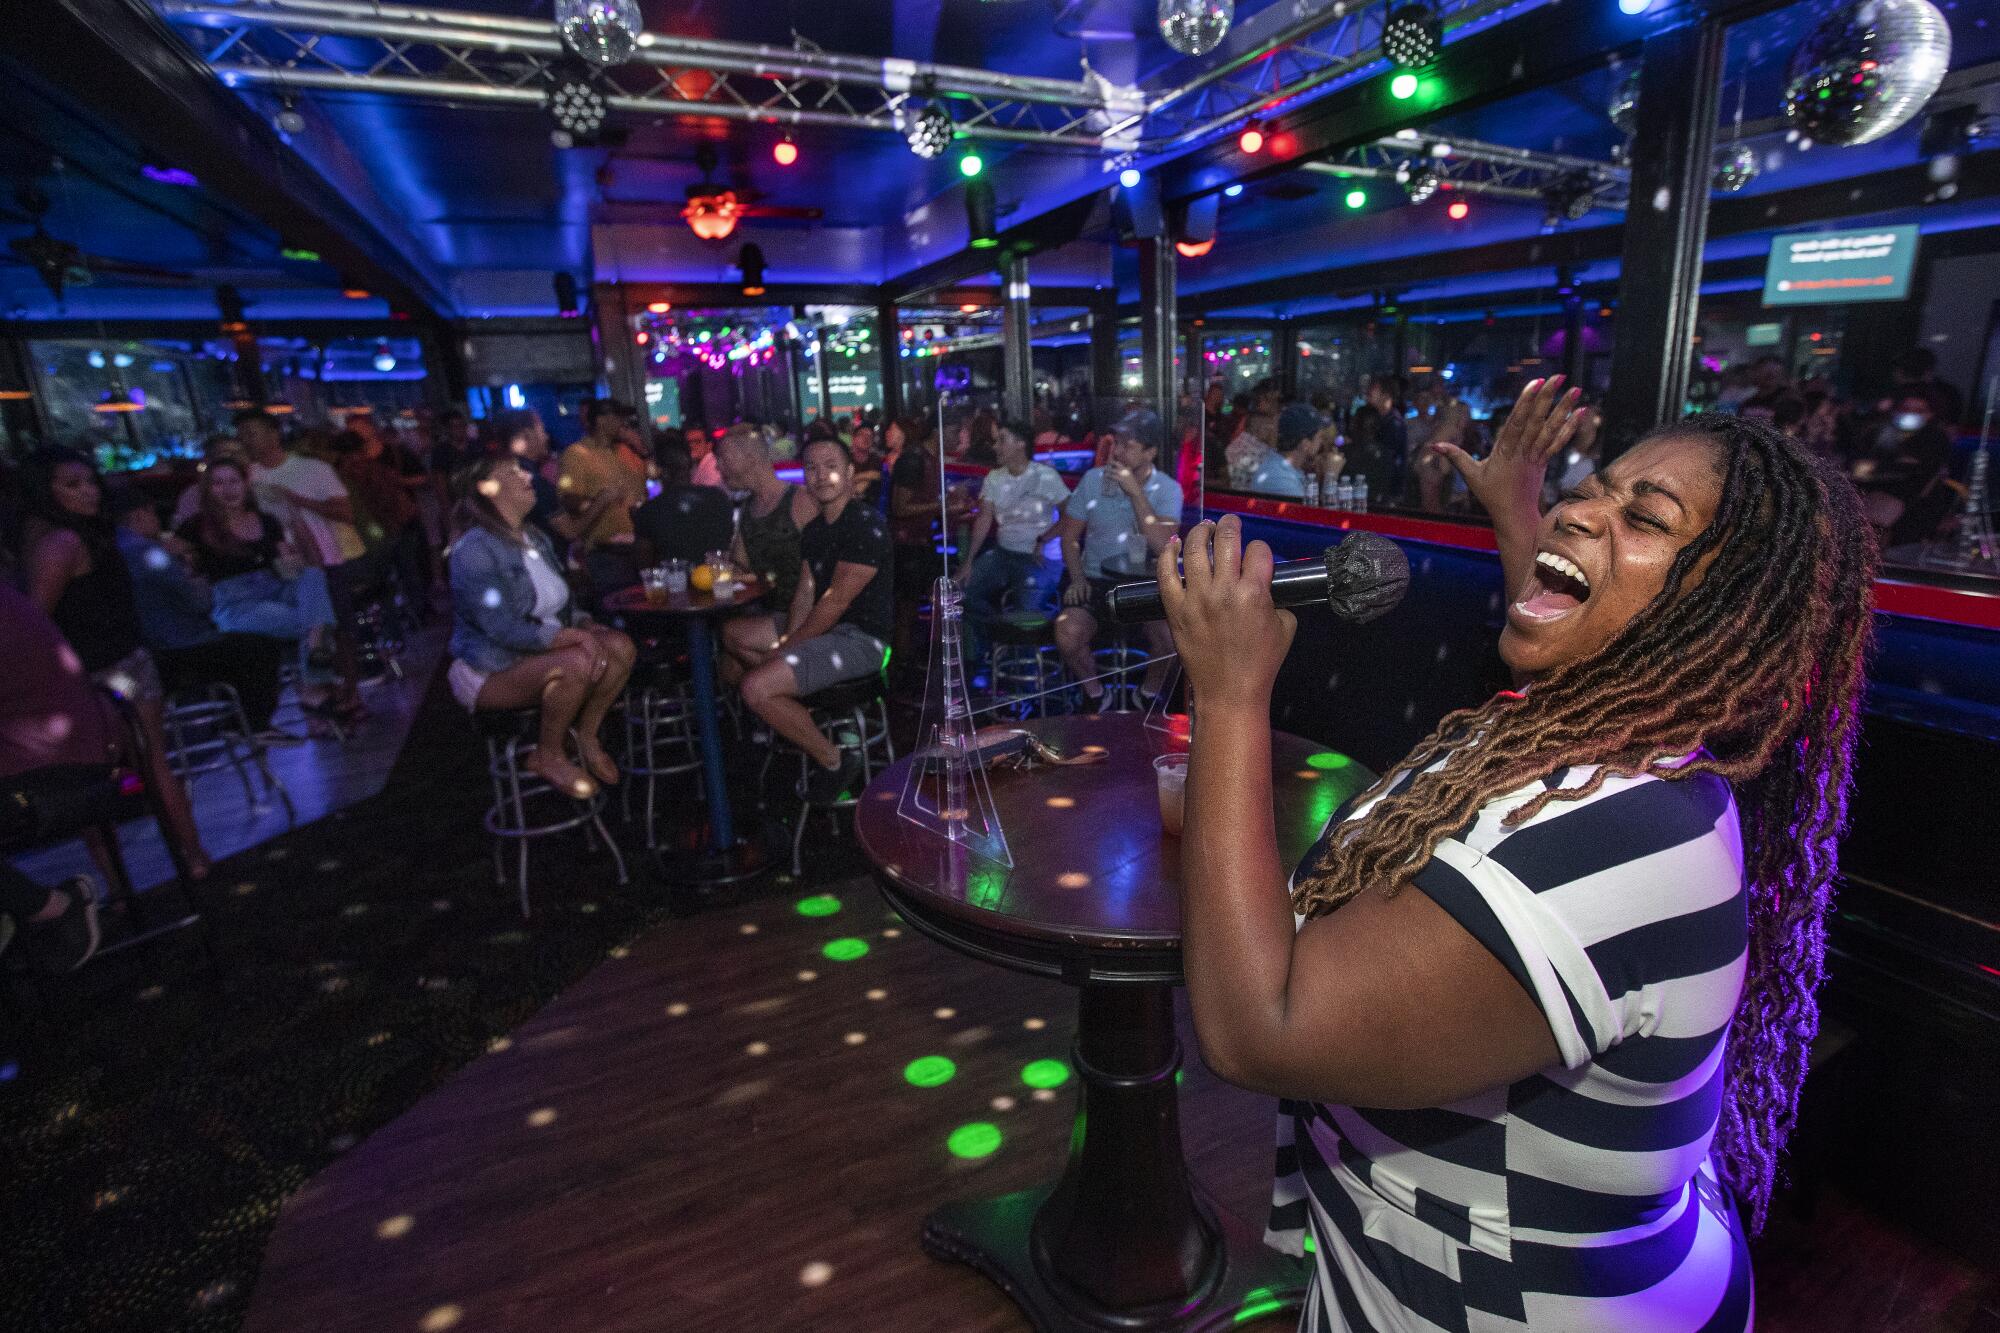 A woman sings karaoke in front of crowd in a dark bar